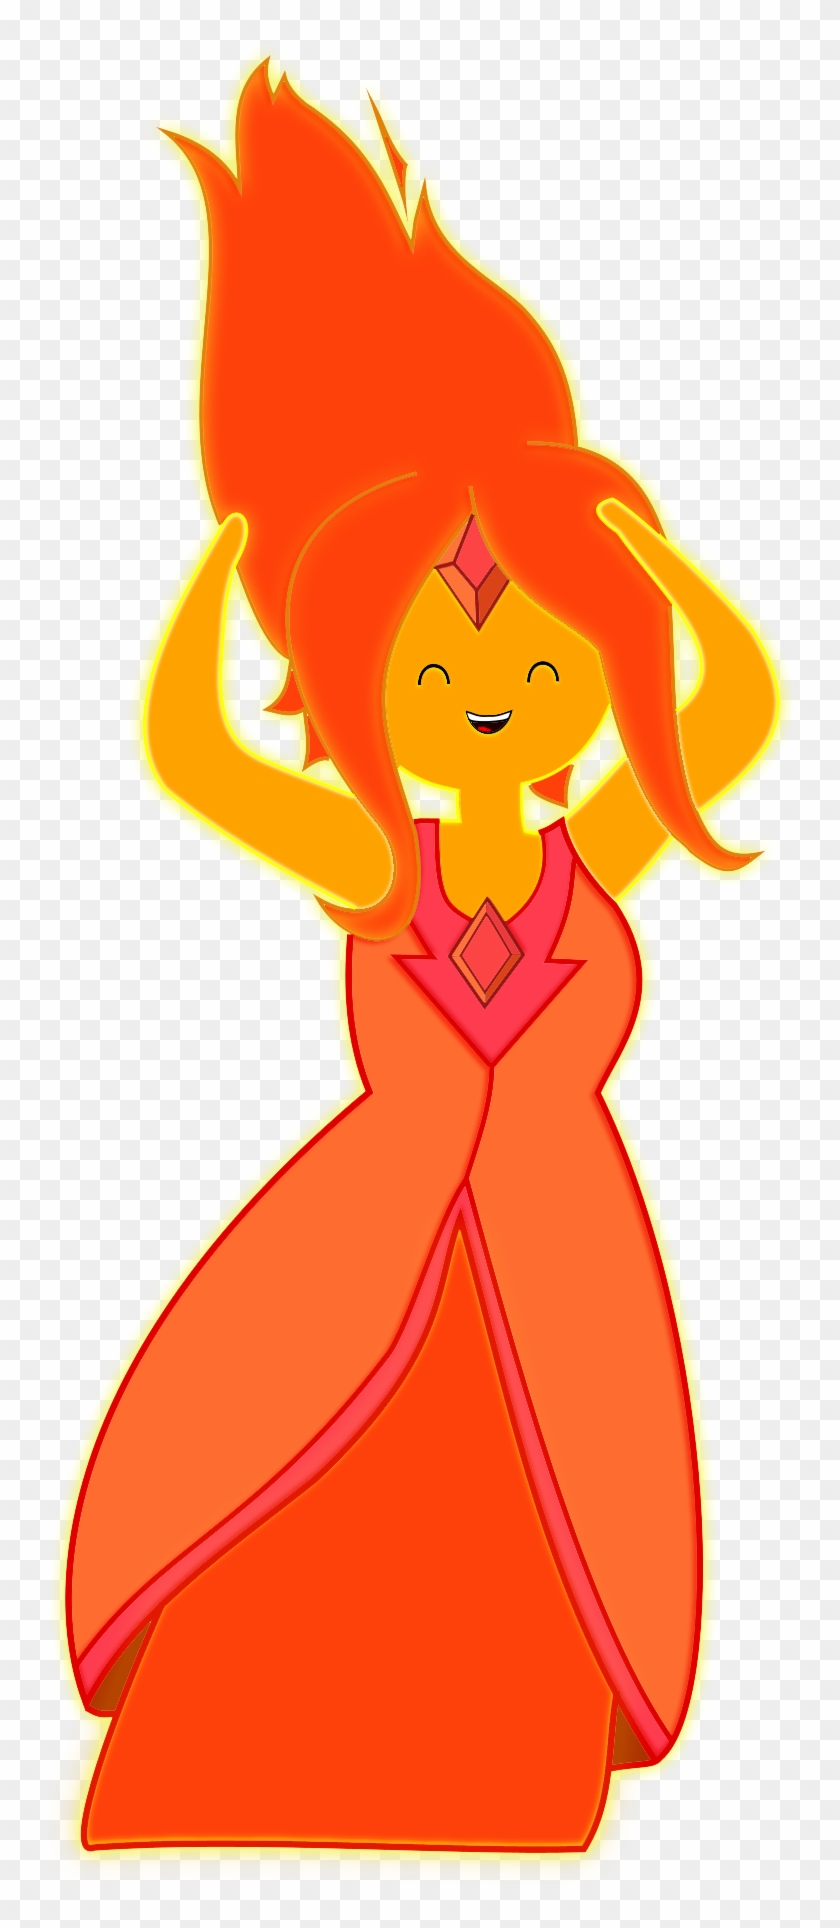 Flame Princess Carmelldansen Vector By Advenimetime - Flame Princess #571852